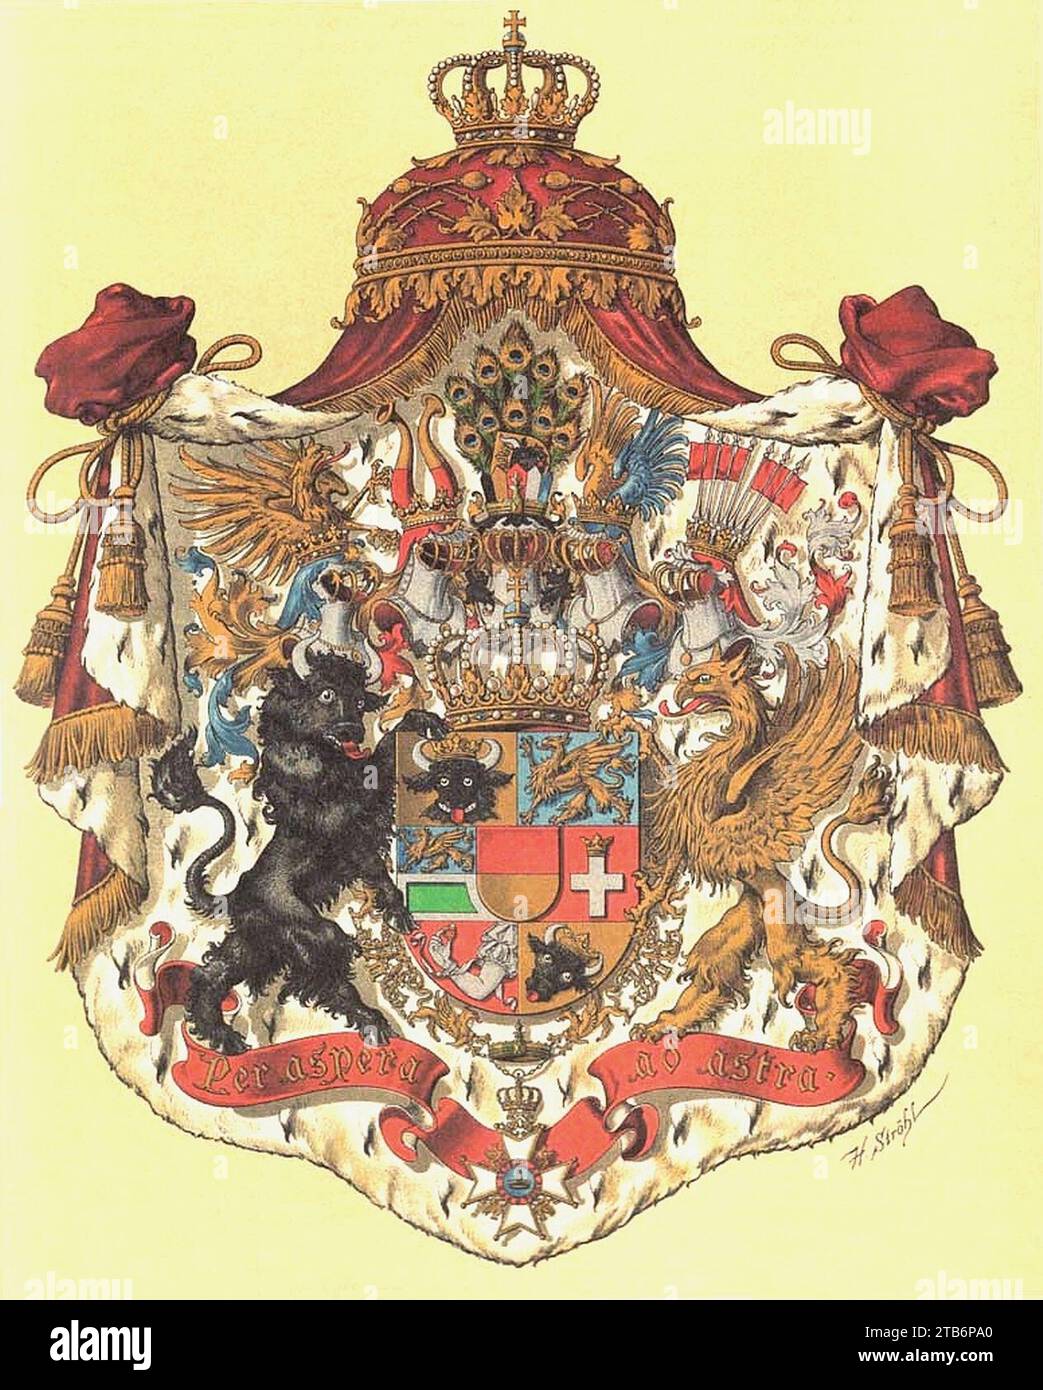 Wappen Deutsches Reich - Grossherzogtum Mecklenburg-Schwerin. Stock Photo